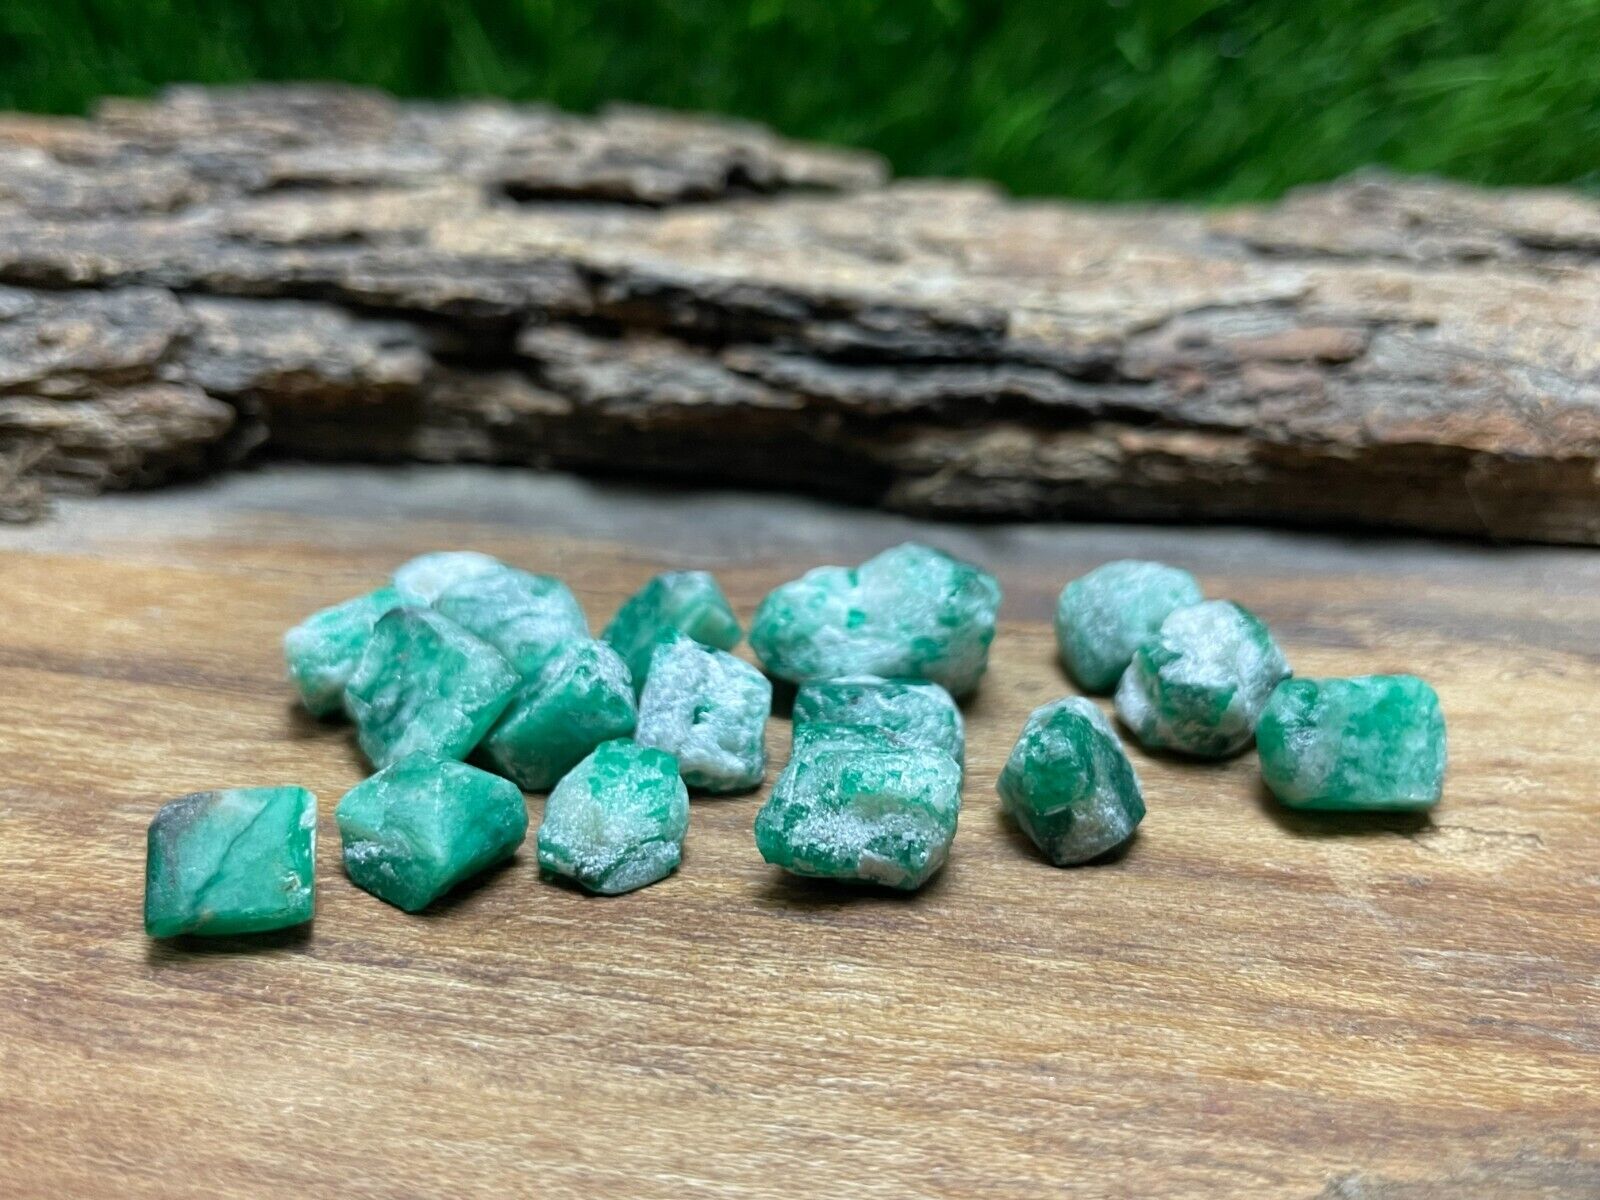 63 Carat Beautiful Emerald lot crystal specimen from Pakistan